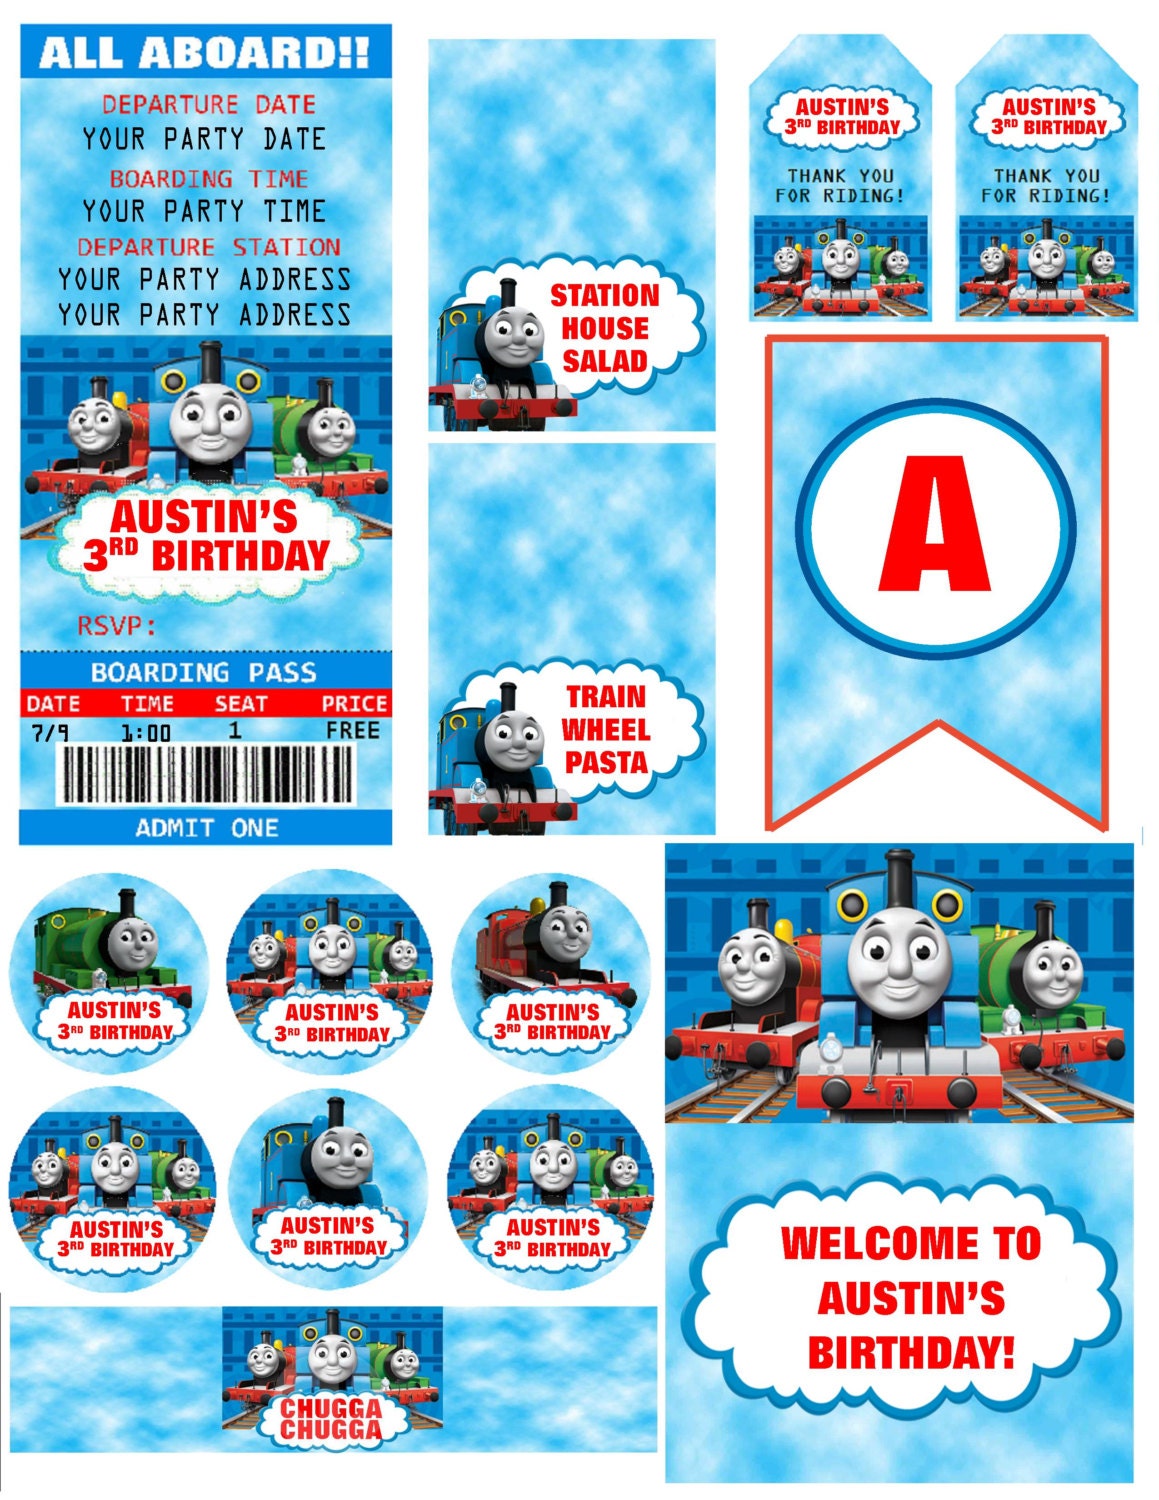 Thomas & Friends Train Ticket Sports Bottle